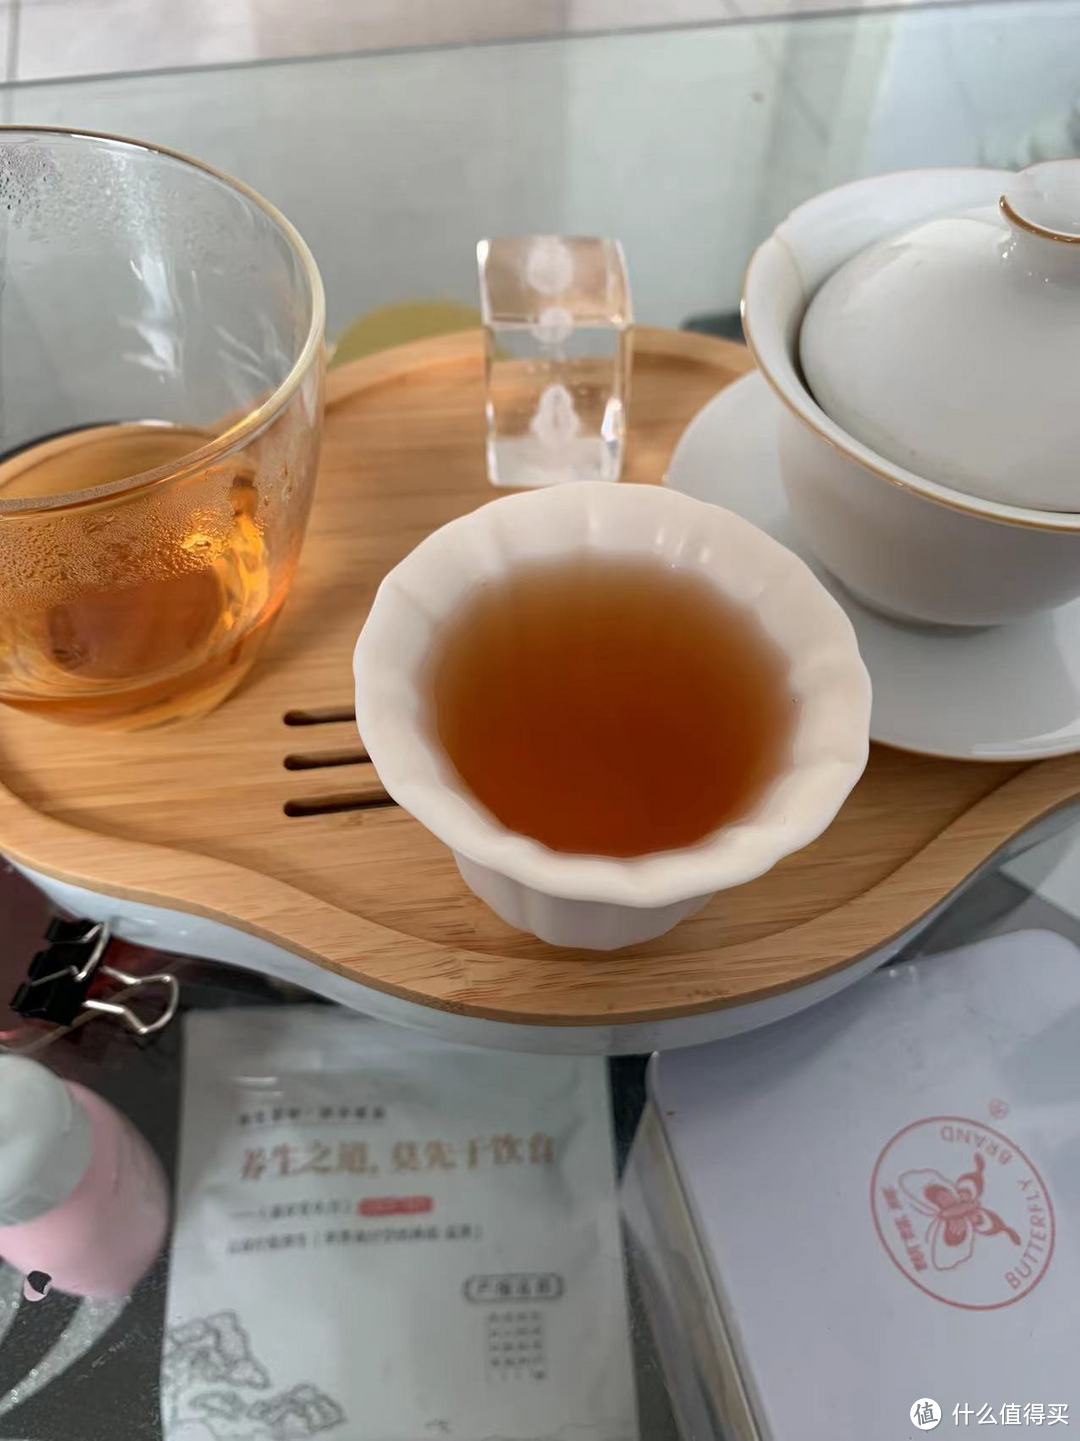 钢蛋的口粮茶简单分享——红茶篇